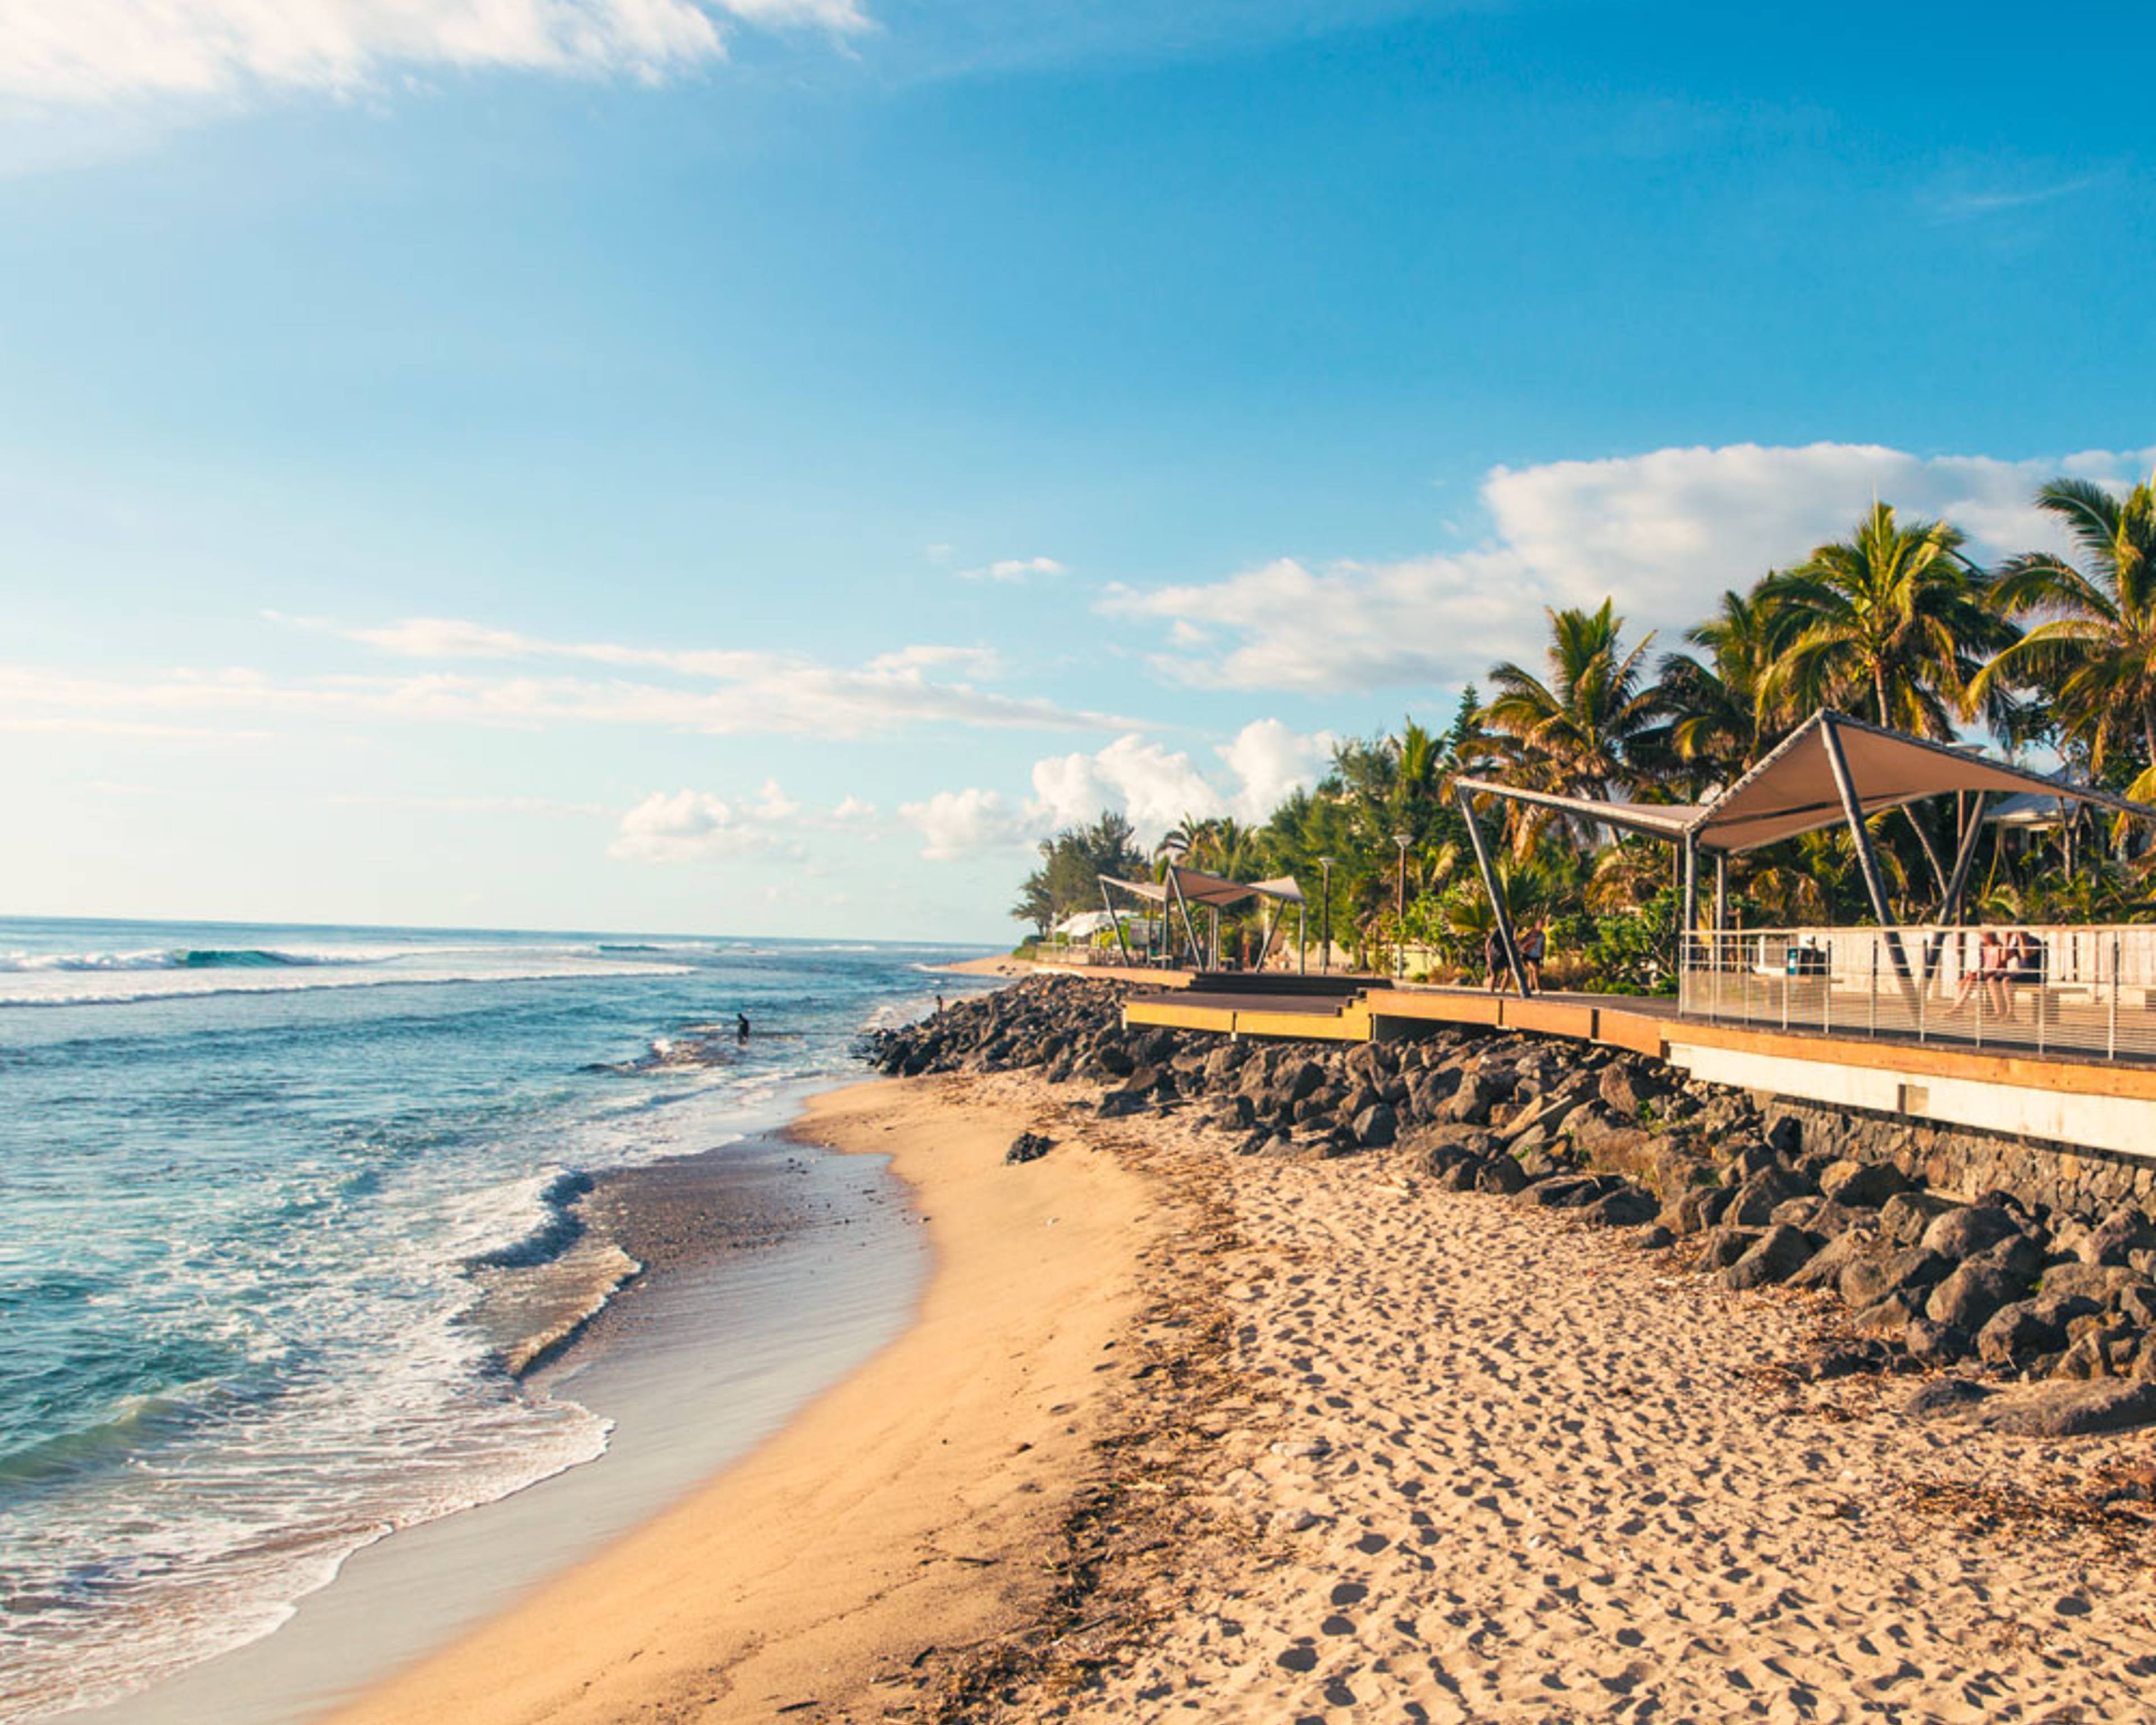 Découvrez les plus belles plages lors de votre voyage à la Réunion 100% sur mesure